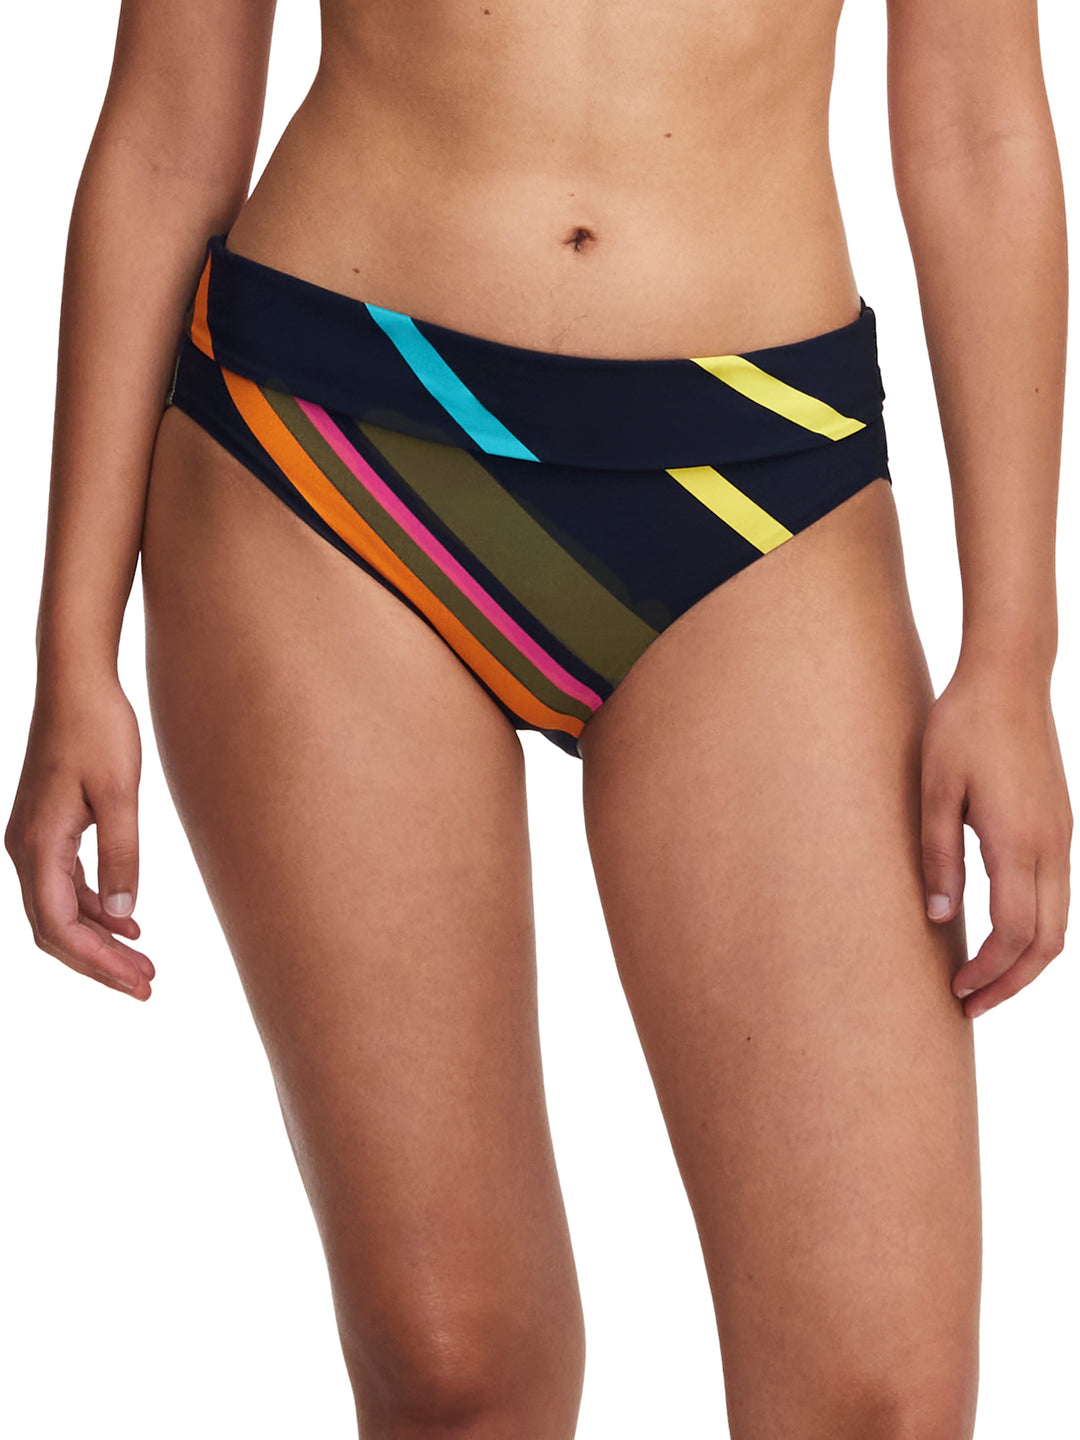 Chantelle Swimwear Costume da Bagno Completo Slip - Bikini Completo a Righe Colorate Chantelle